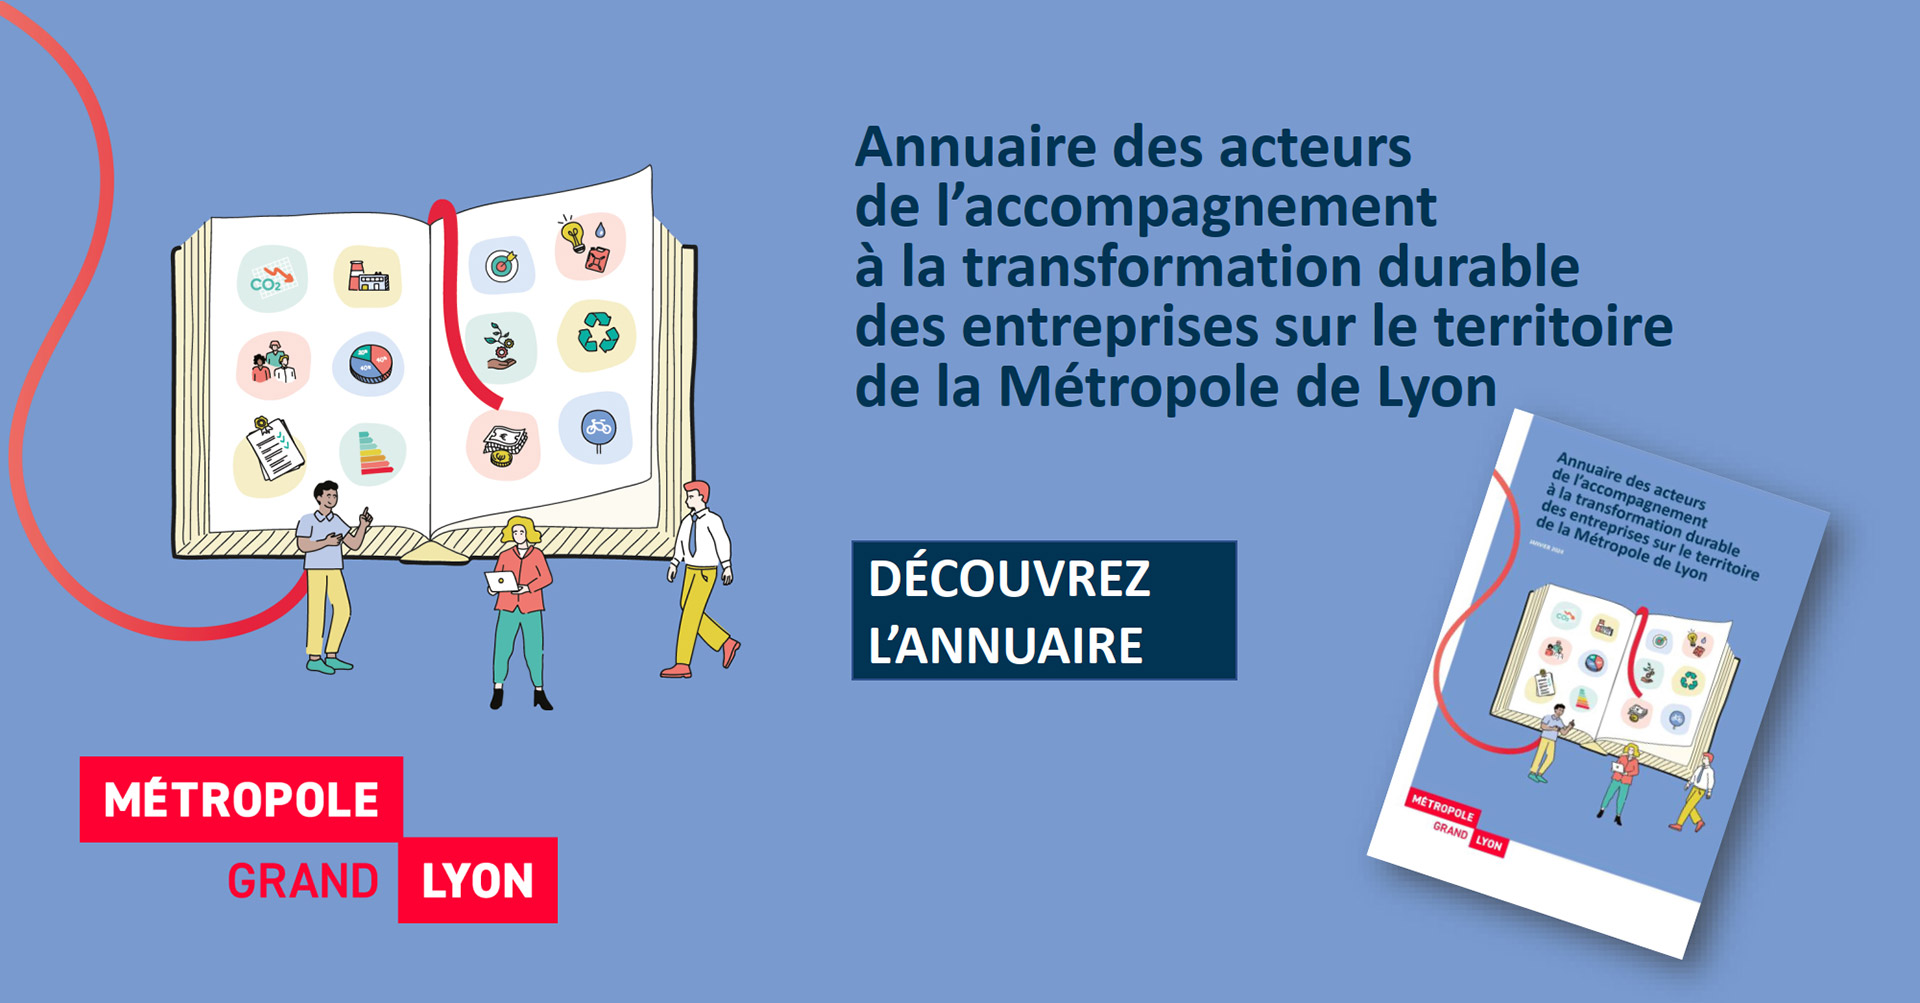 Voir l'actualité  Publication d’un annuaire des acteurs de l’accompagnement à la transformation durable des entreprises sur le territoire de la métropole de Lyon